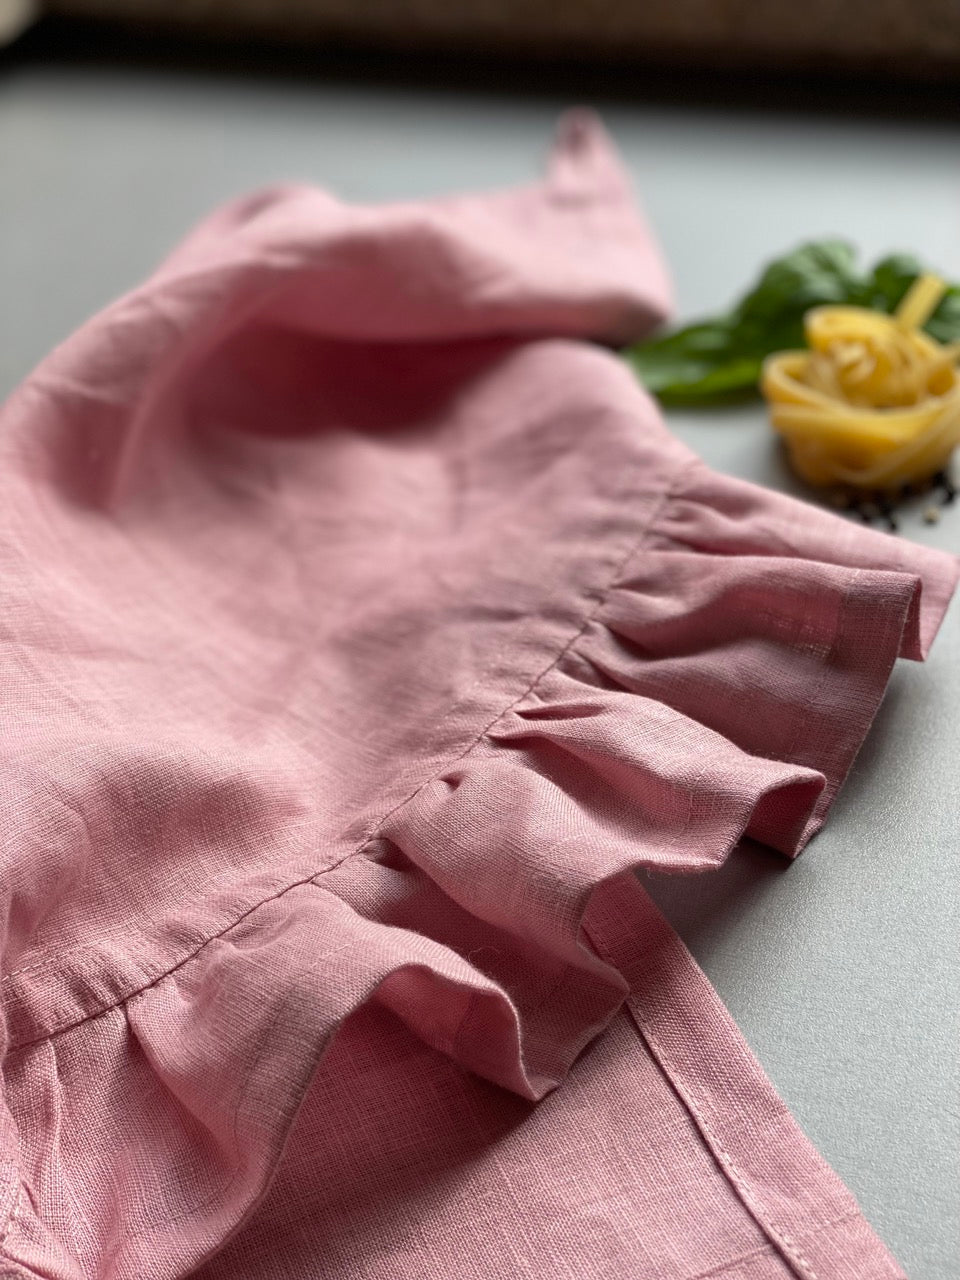 Natural Linen Kitchen Cloth – Townsends